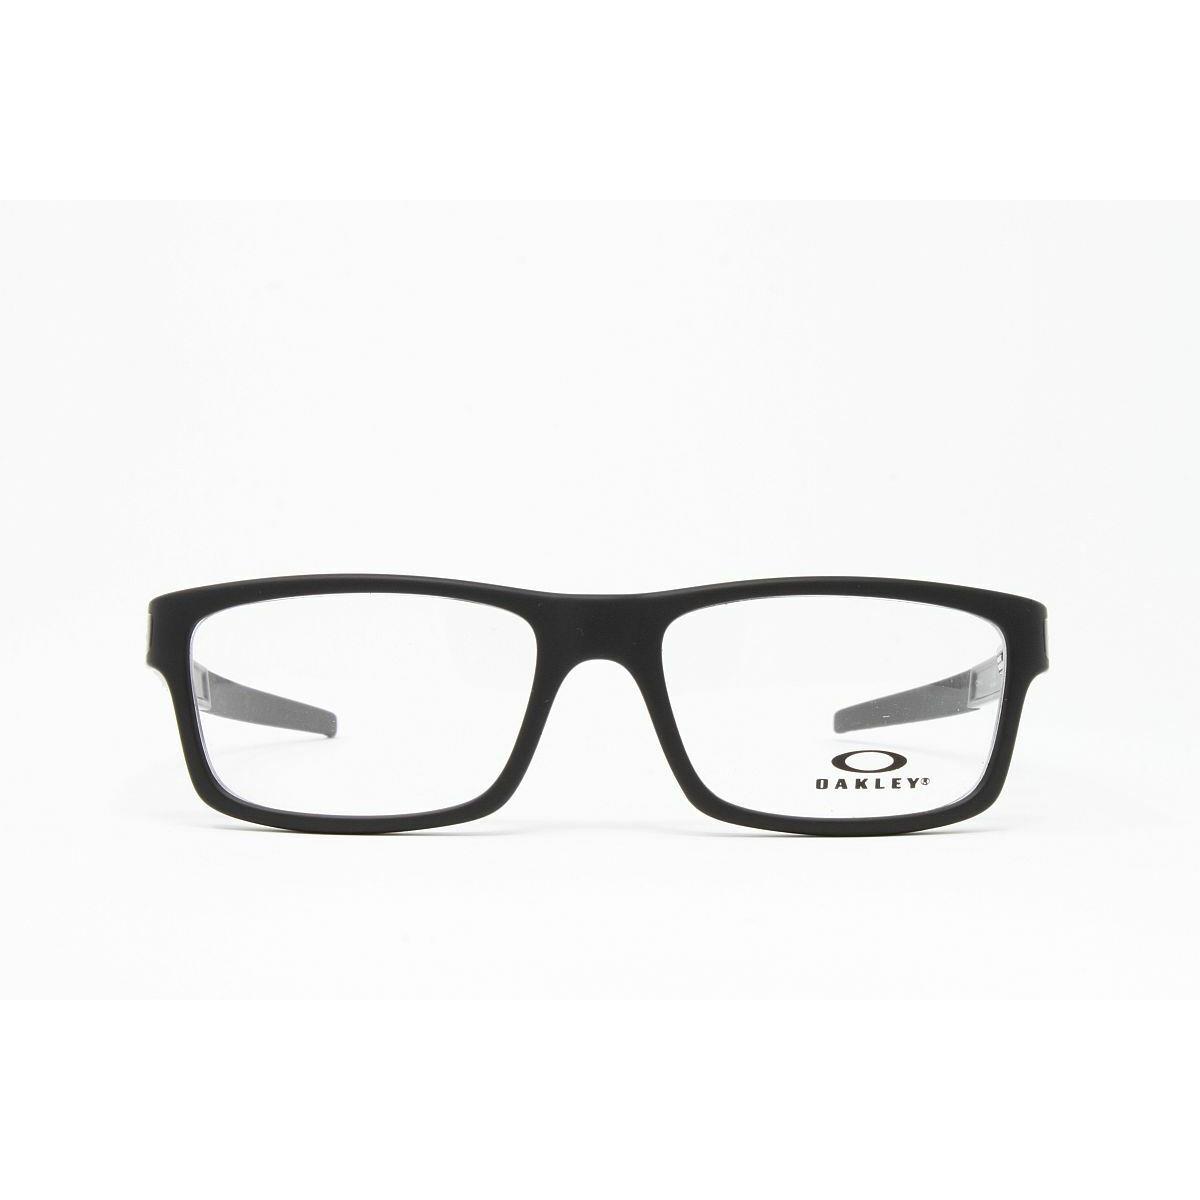 Oakley eyeglasses Optical Currency - Black Frame